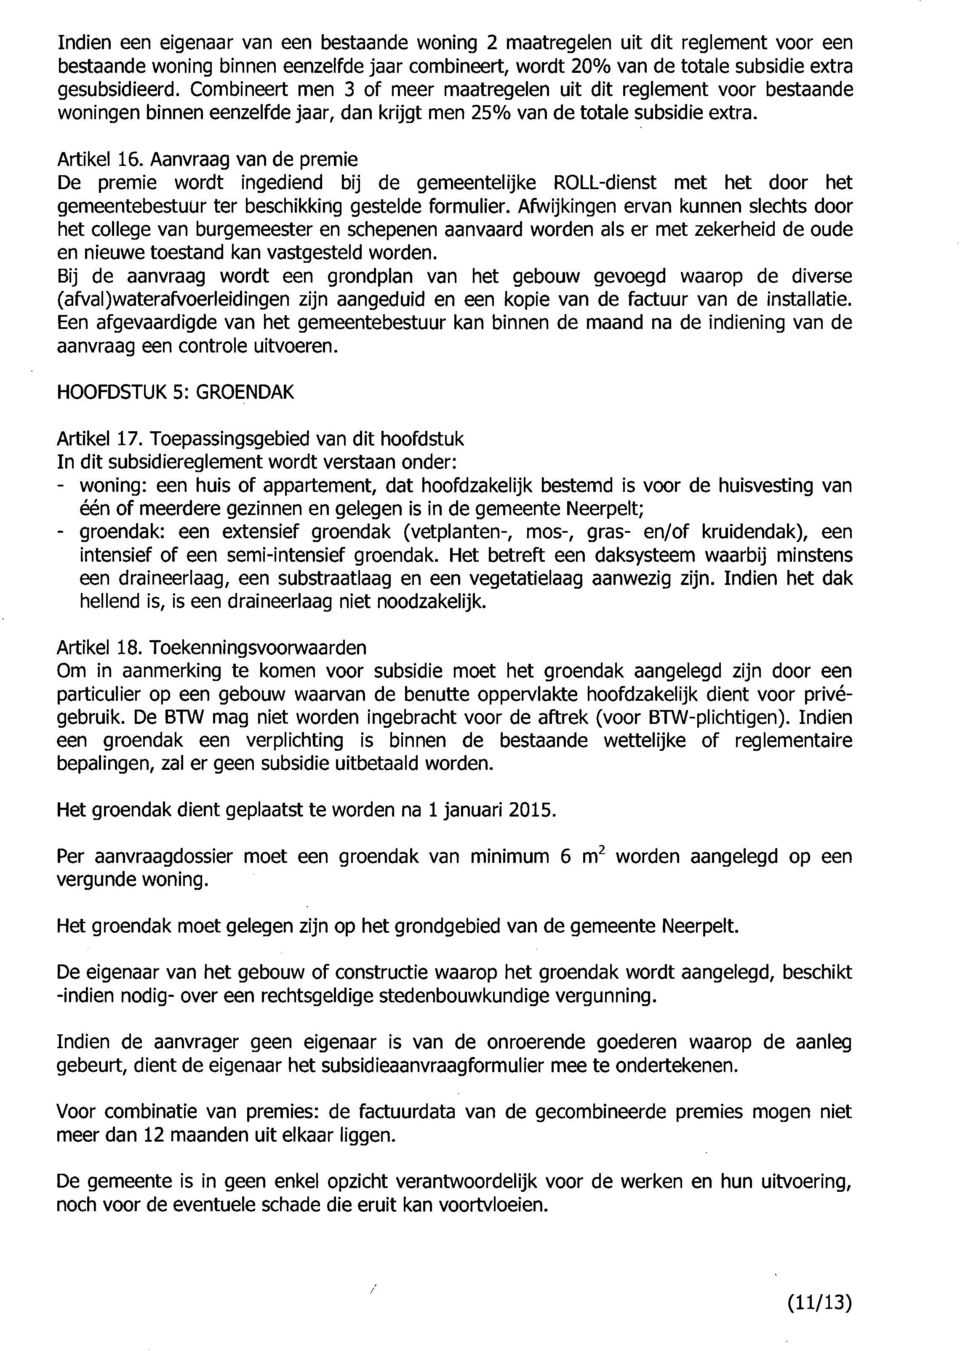 Aanvraag van de premie De premie wordt ingediend bij de gemeentelijke ROLL-dienst met het door het gemeentebestuur ter beschikking gestelde formulier.